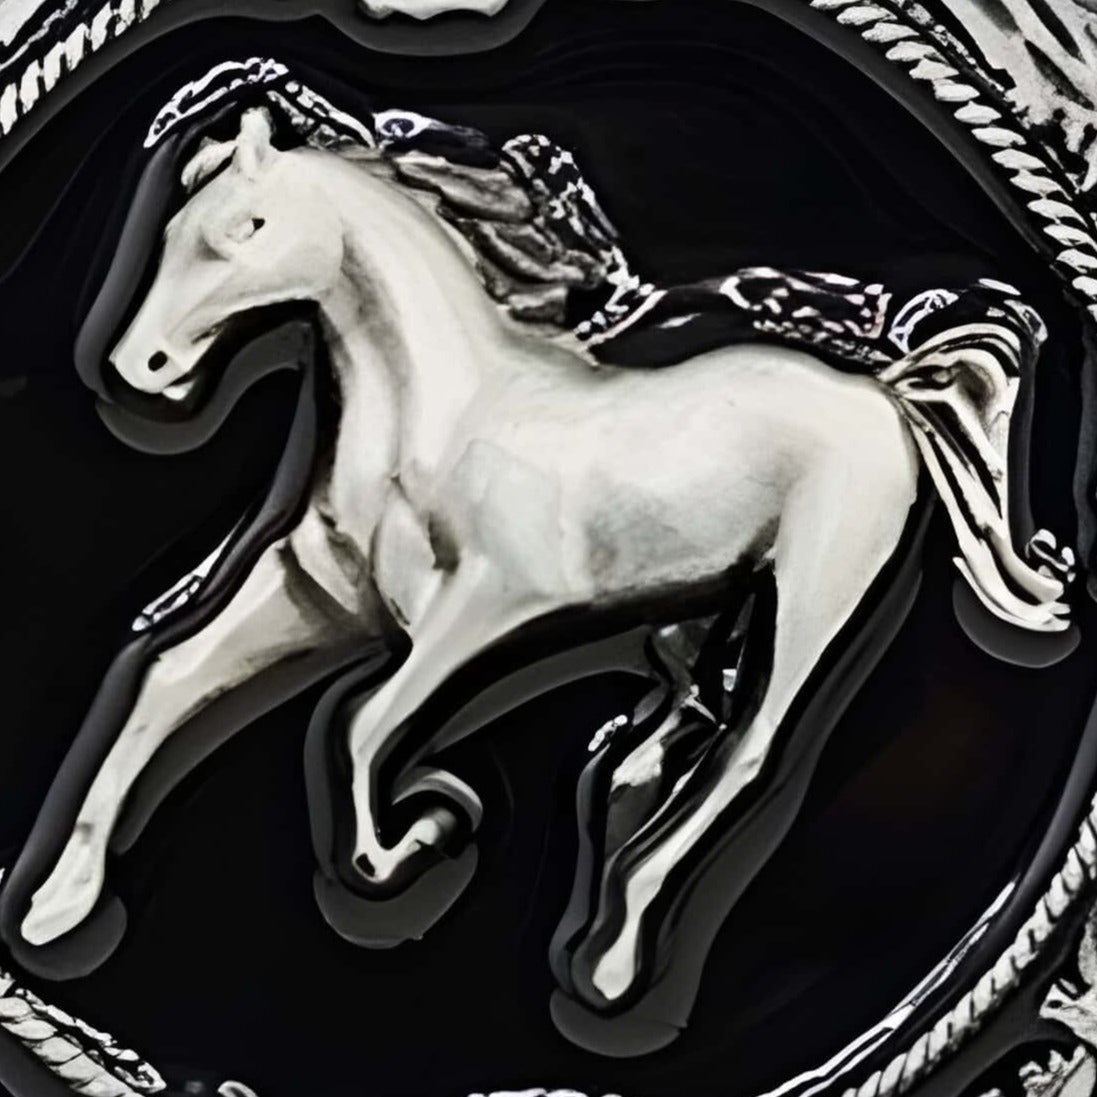 Boucle de ceinture Animal, cheval, modèle Olin - La Boutique de la Ceinture